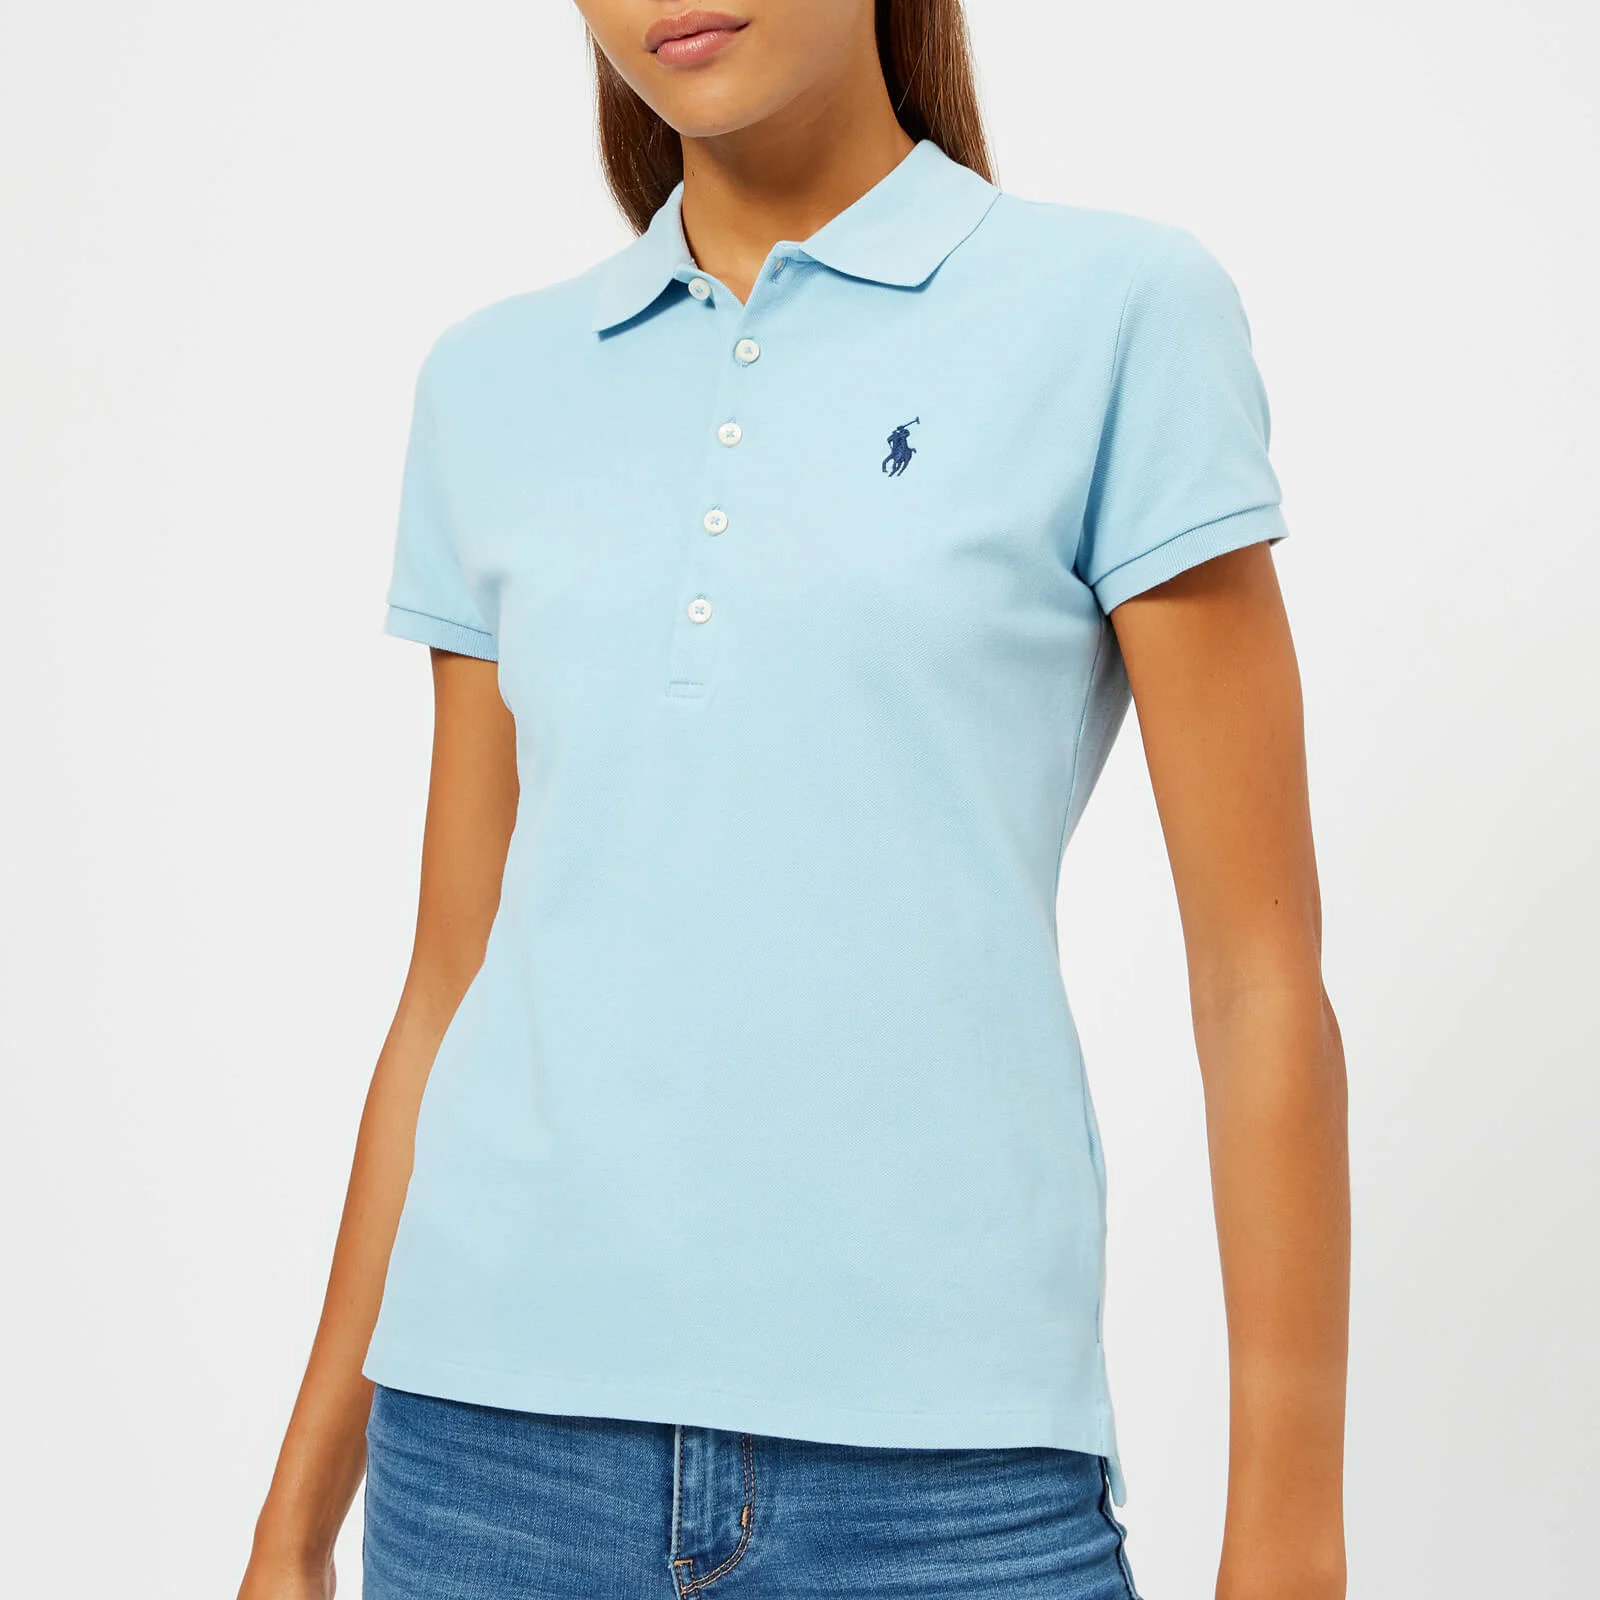 Polo Ralph Lauren Women's Julie Polo Shirt - Light Blue Image 1